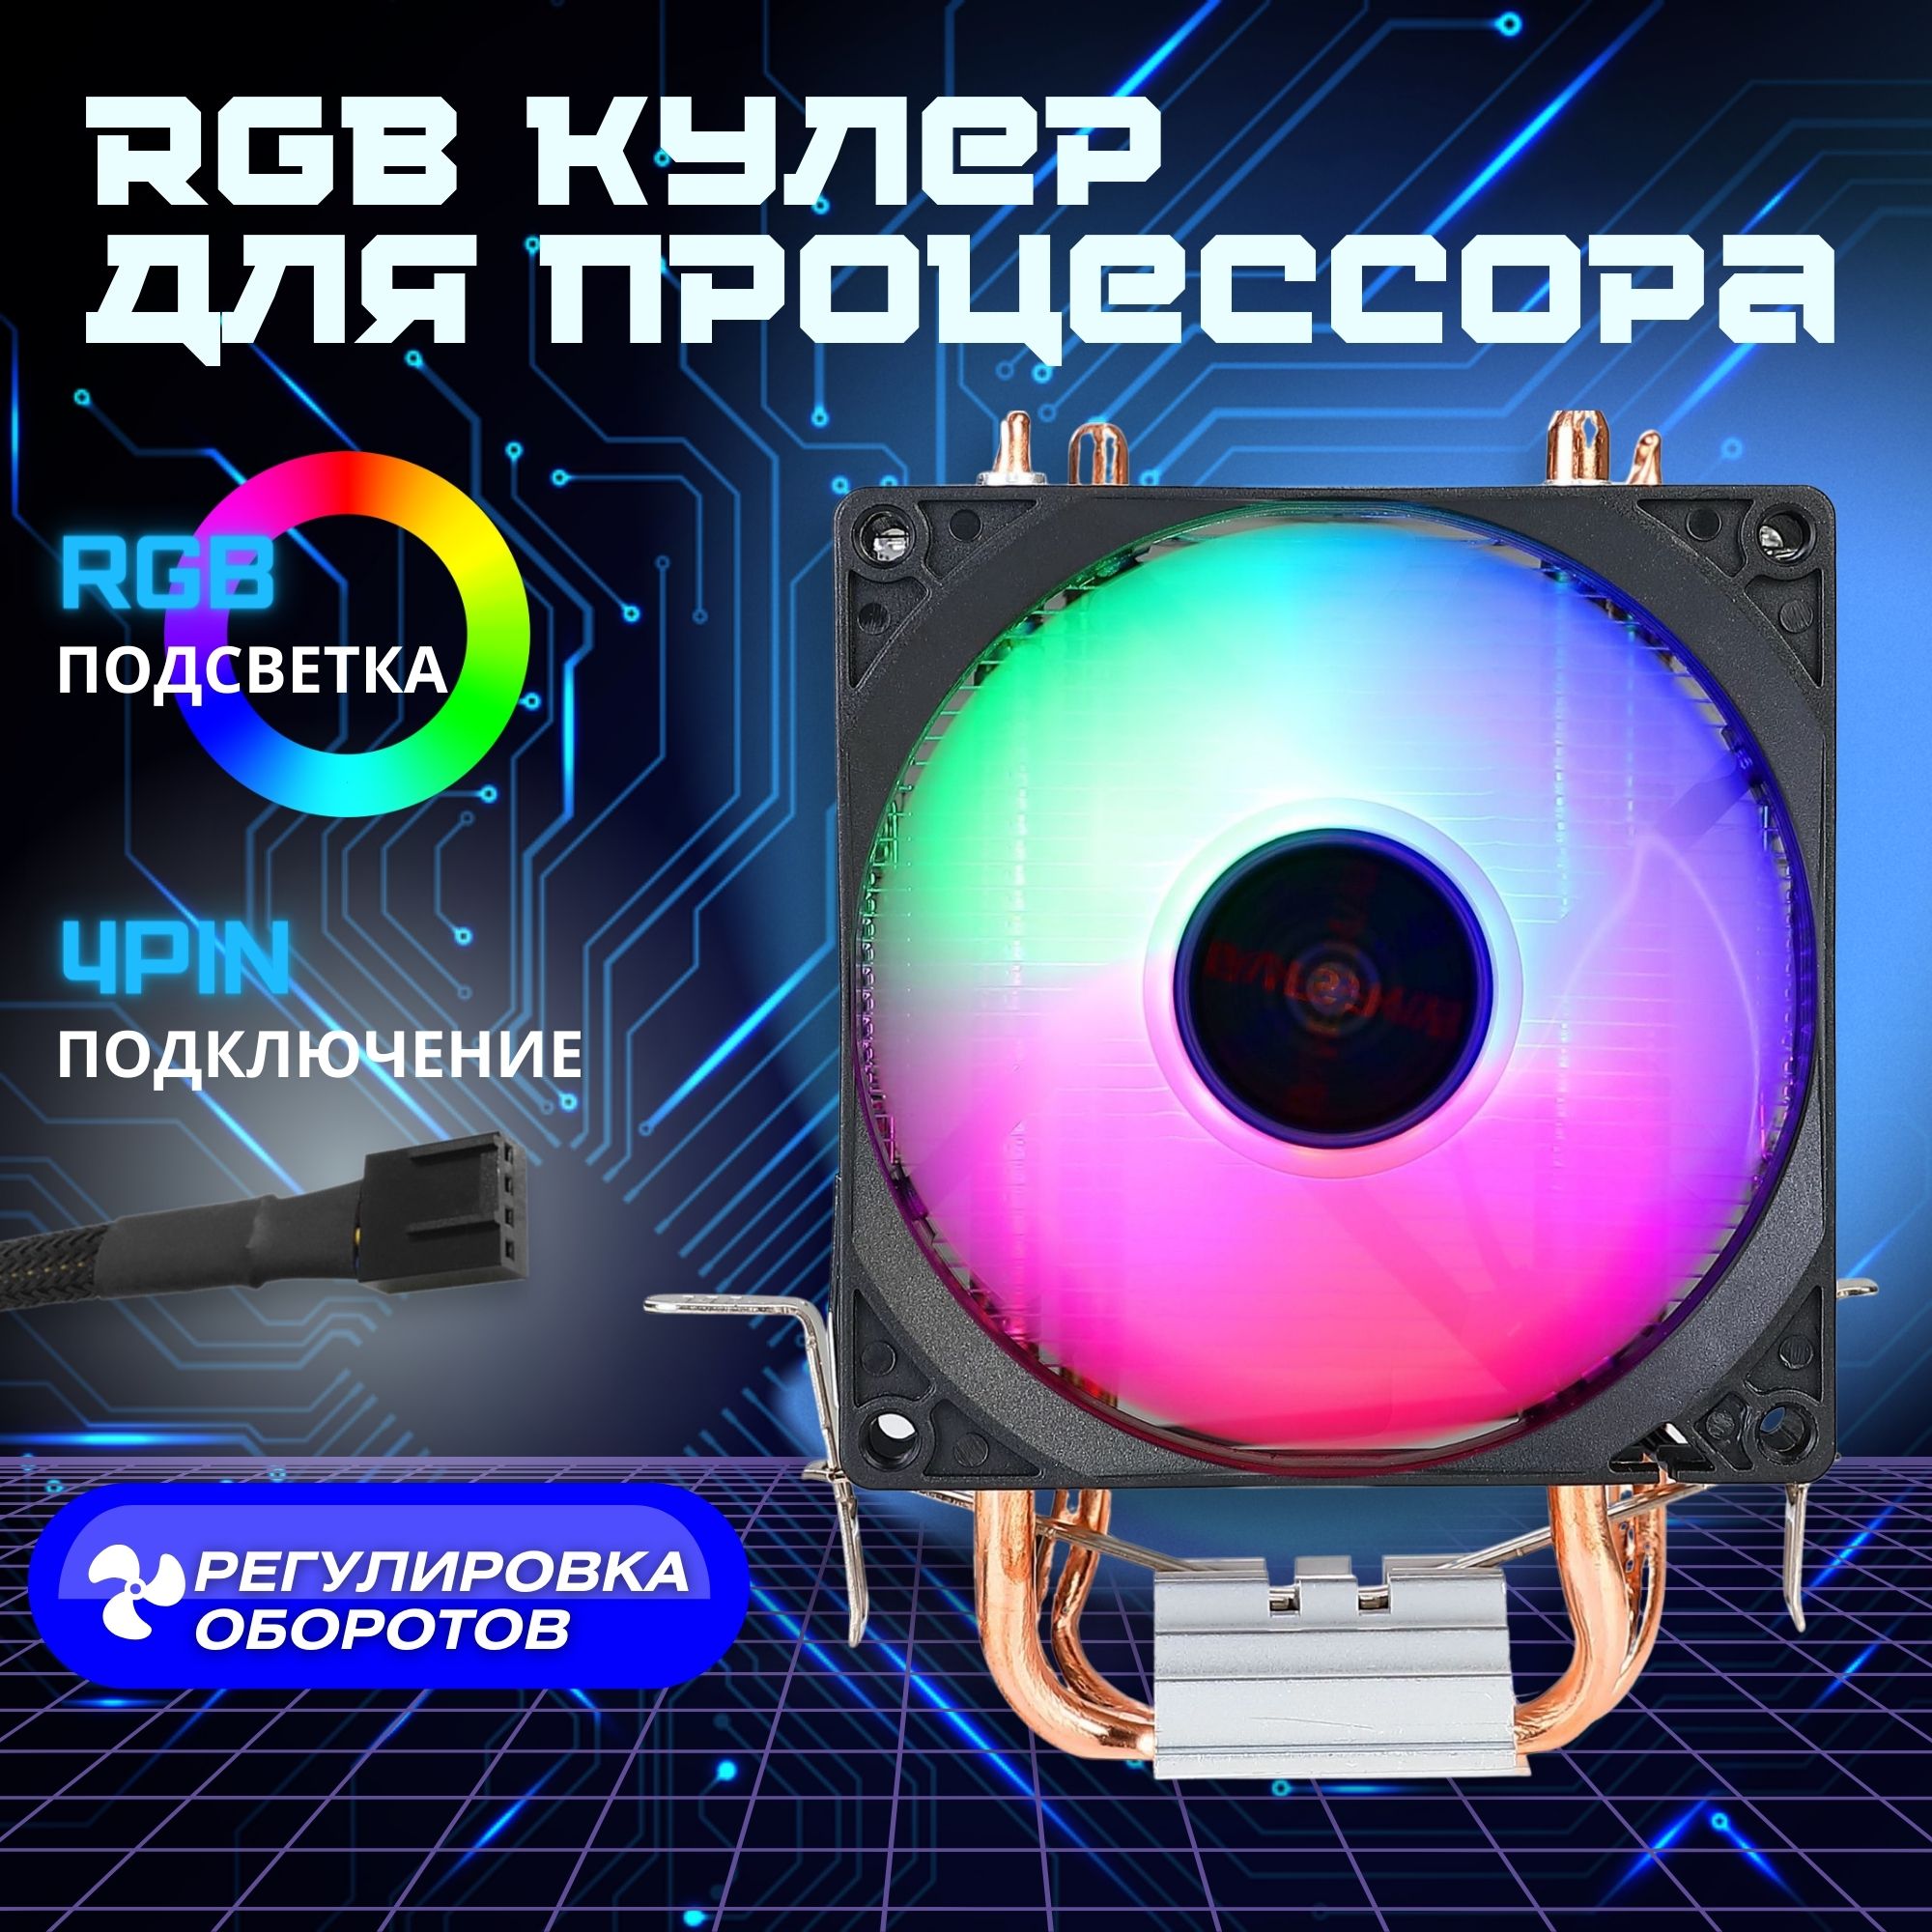 Кулер для процессора MinerMan Evesky 2.0 RGB, купить в Москве, цены в интернет-магазинах на Мегамаркет